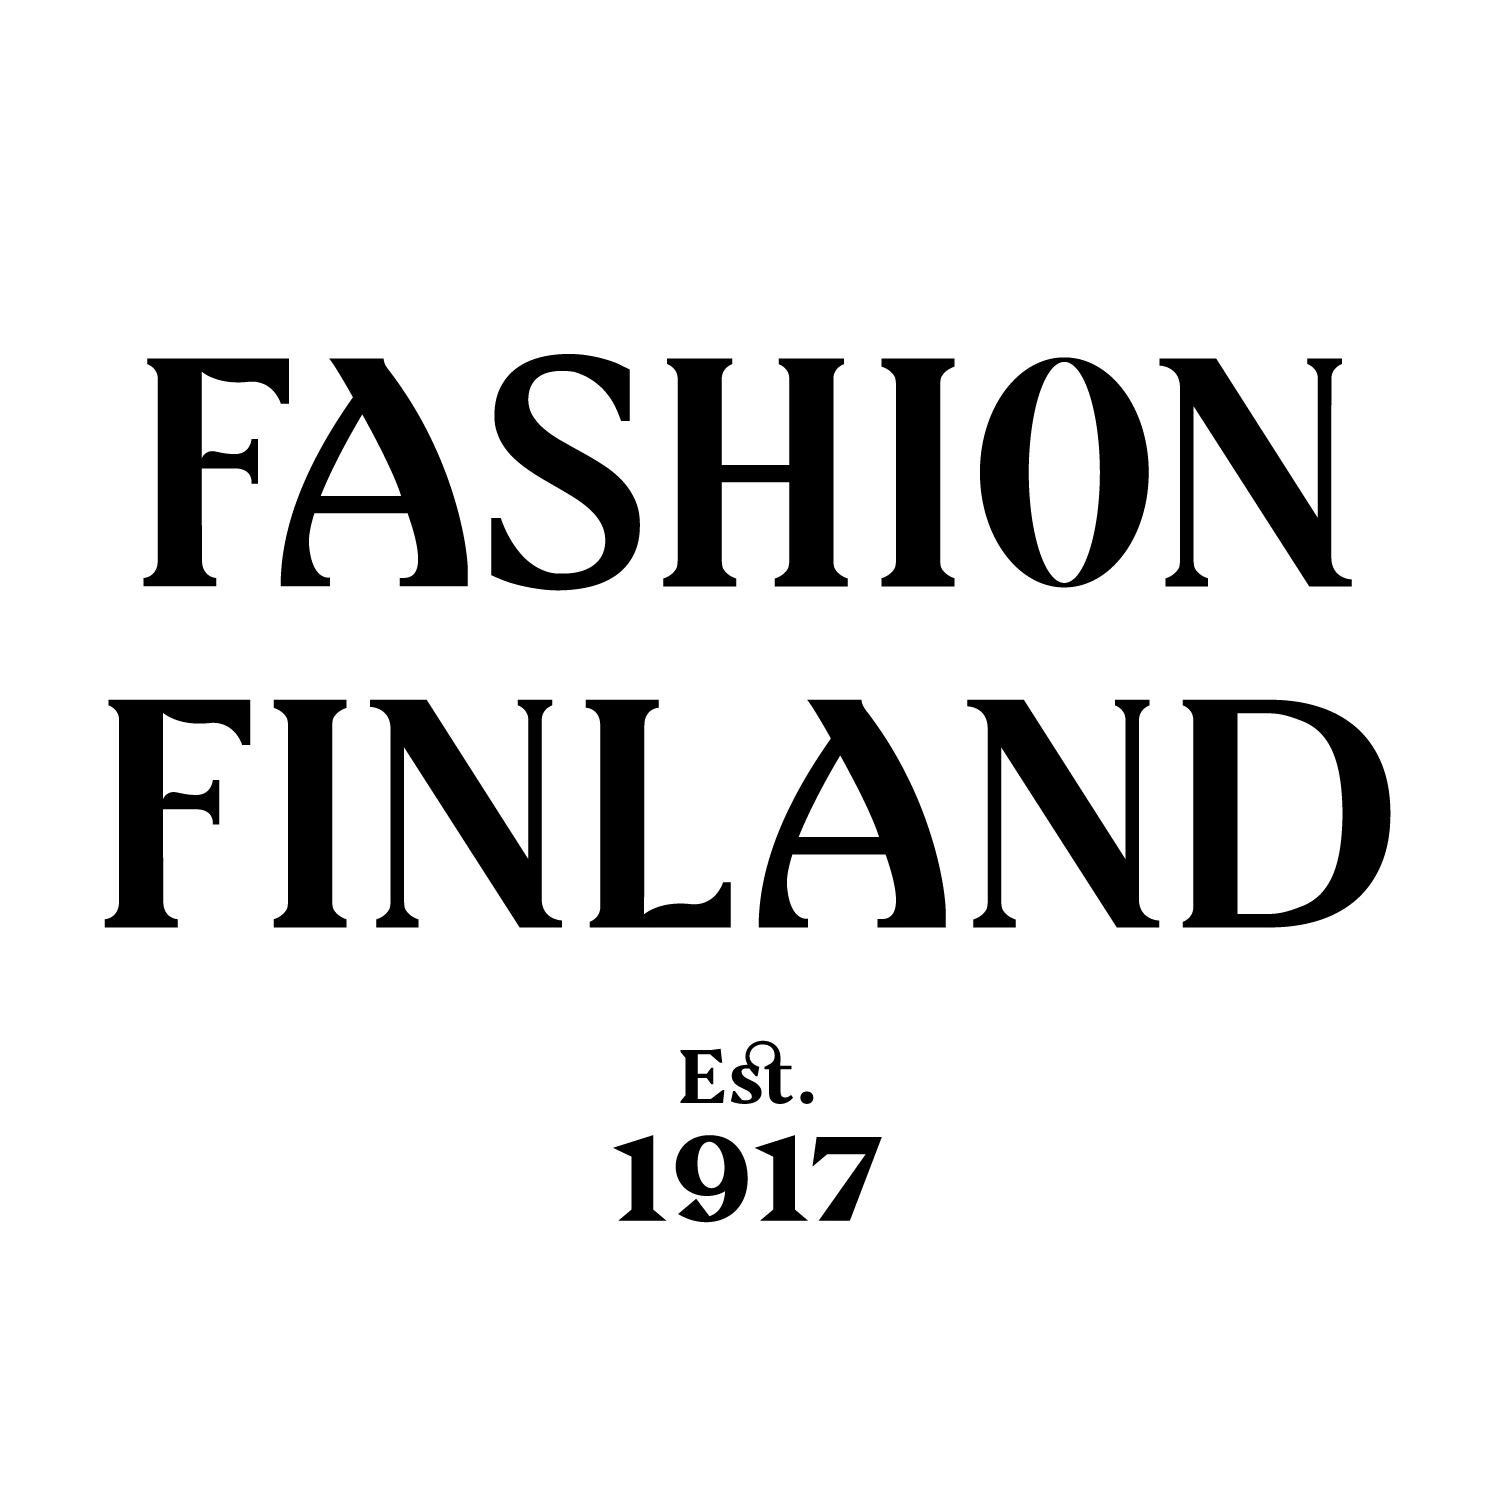 Fashion Finlans est. 1917